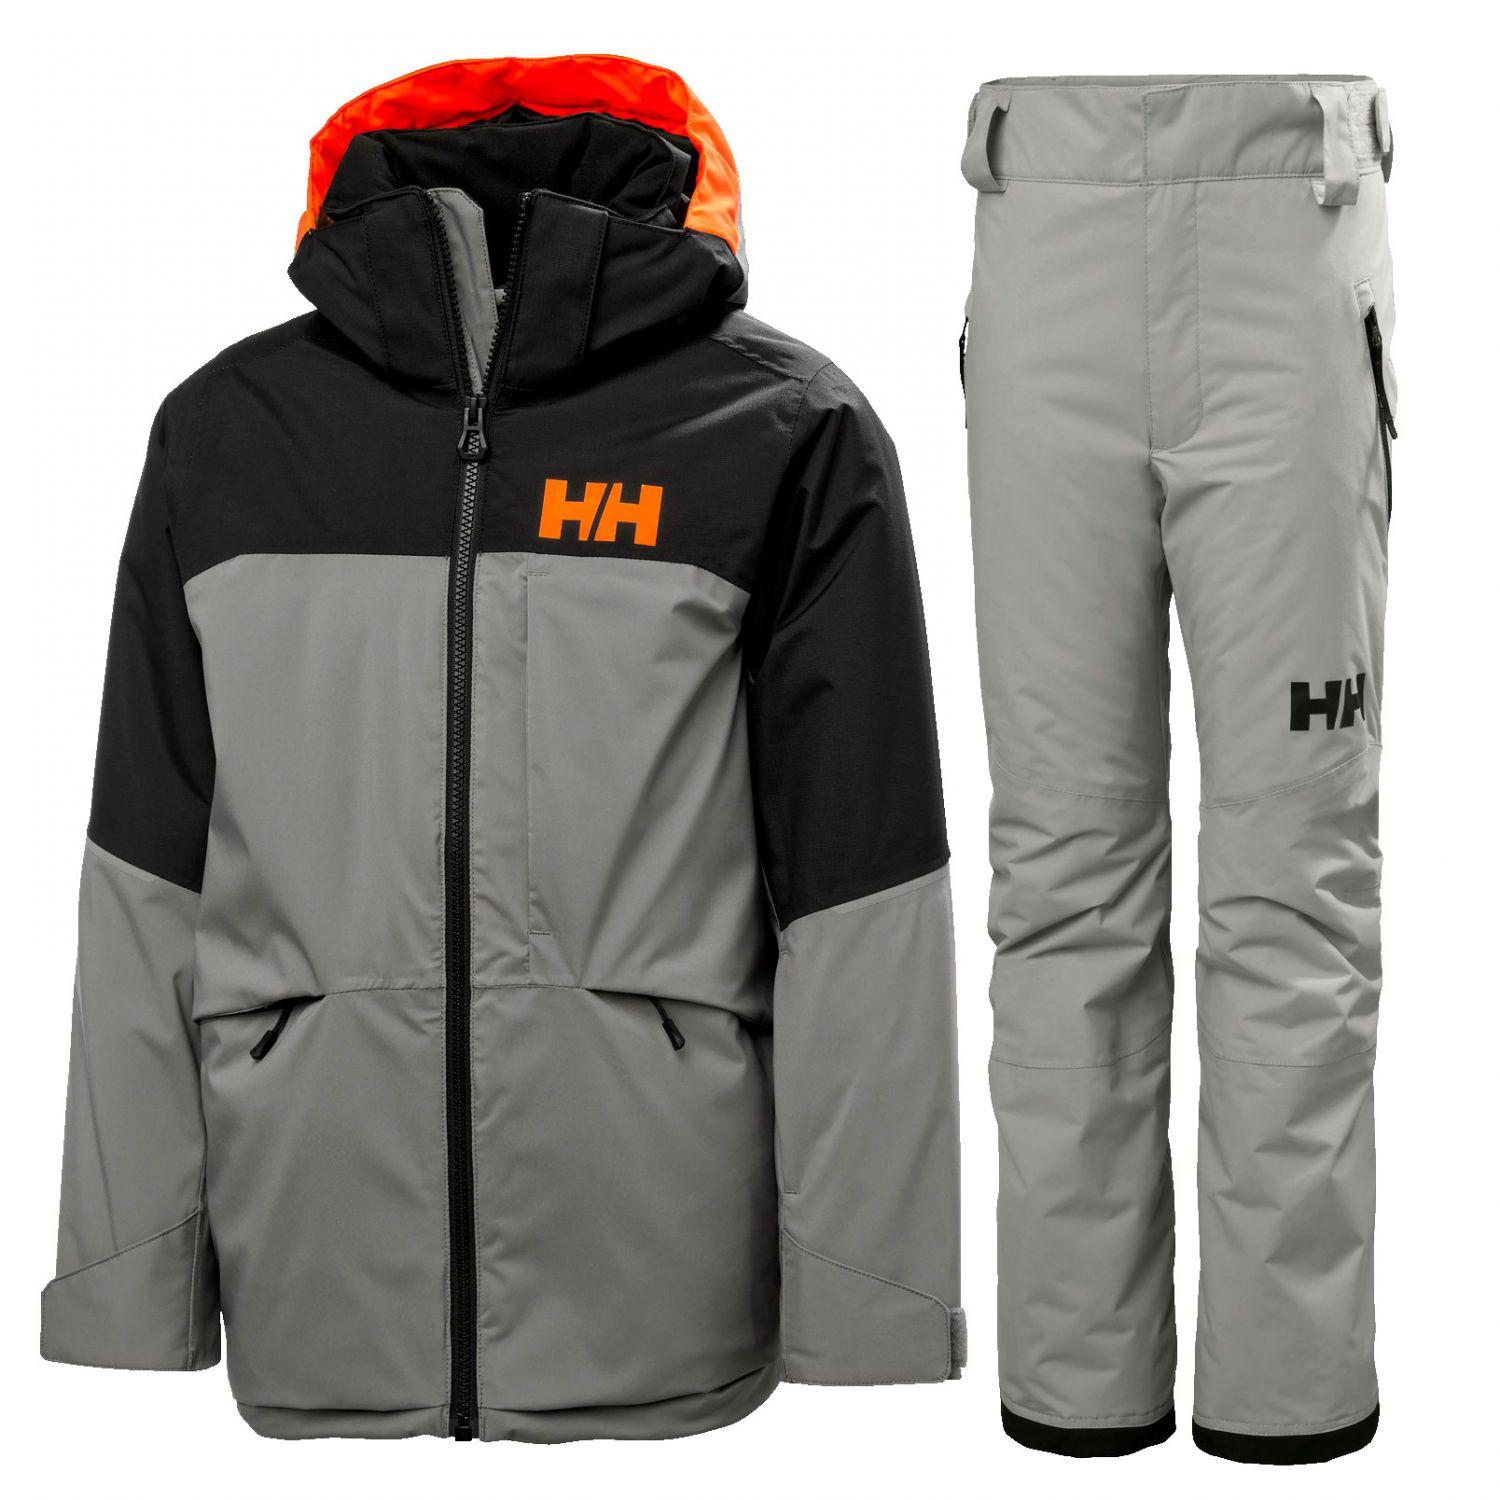 Brug Helly Hansen Summit/Legendary skisæt, junior, grå til en forbedret oplevelse